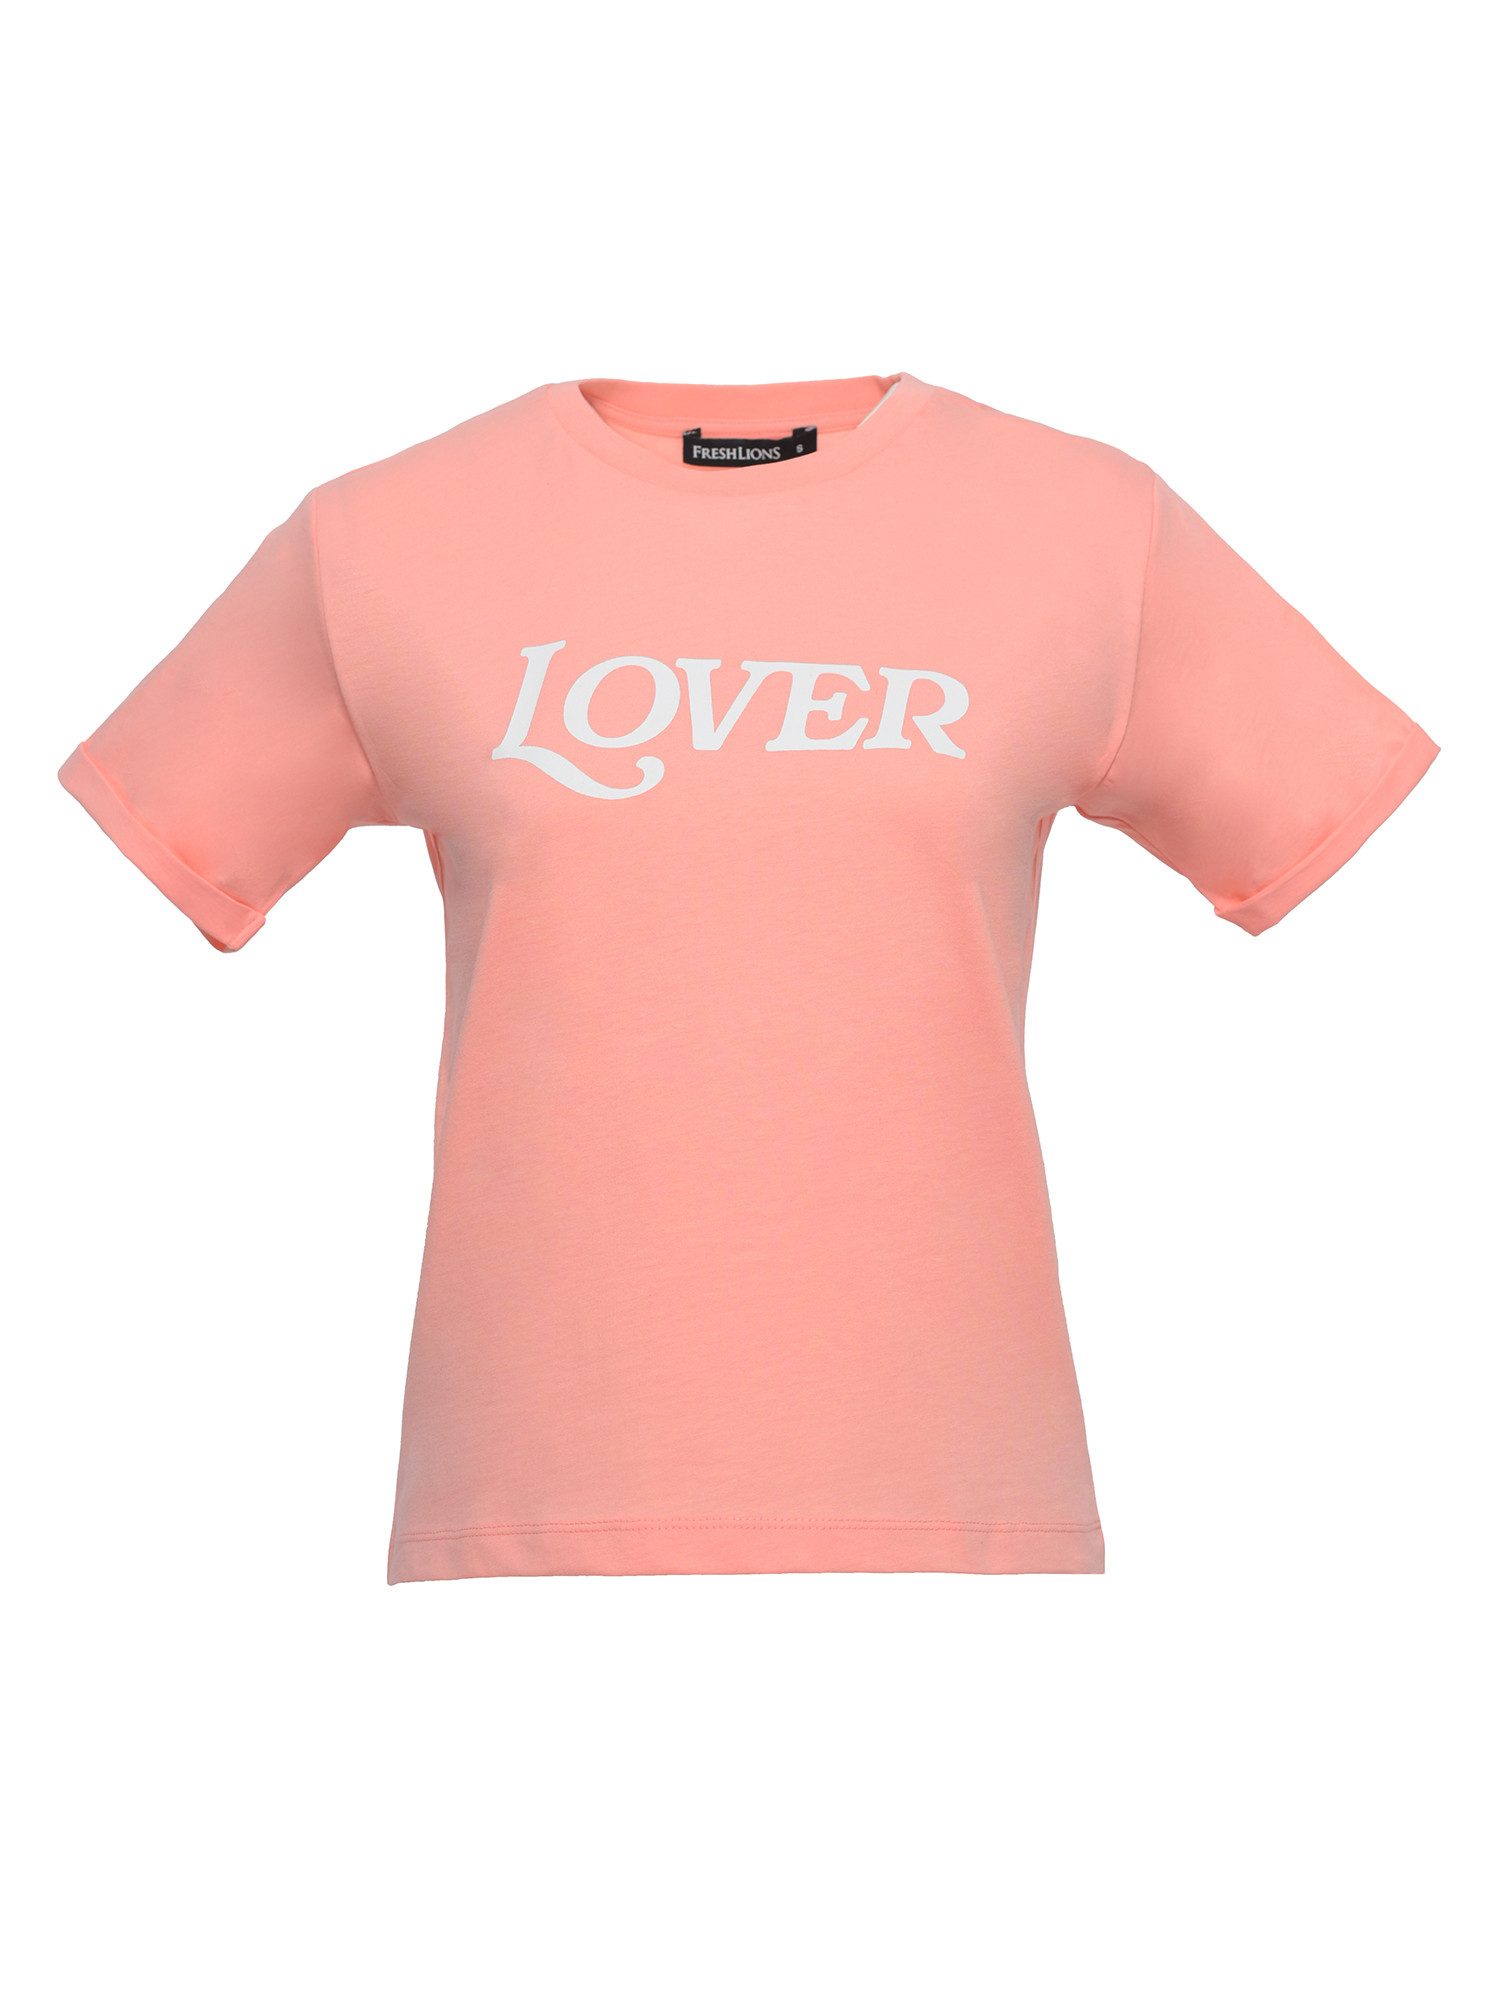 Freshlions T-Shirt Lover